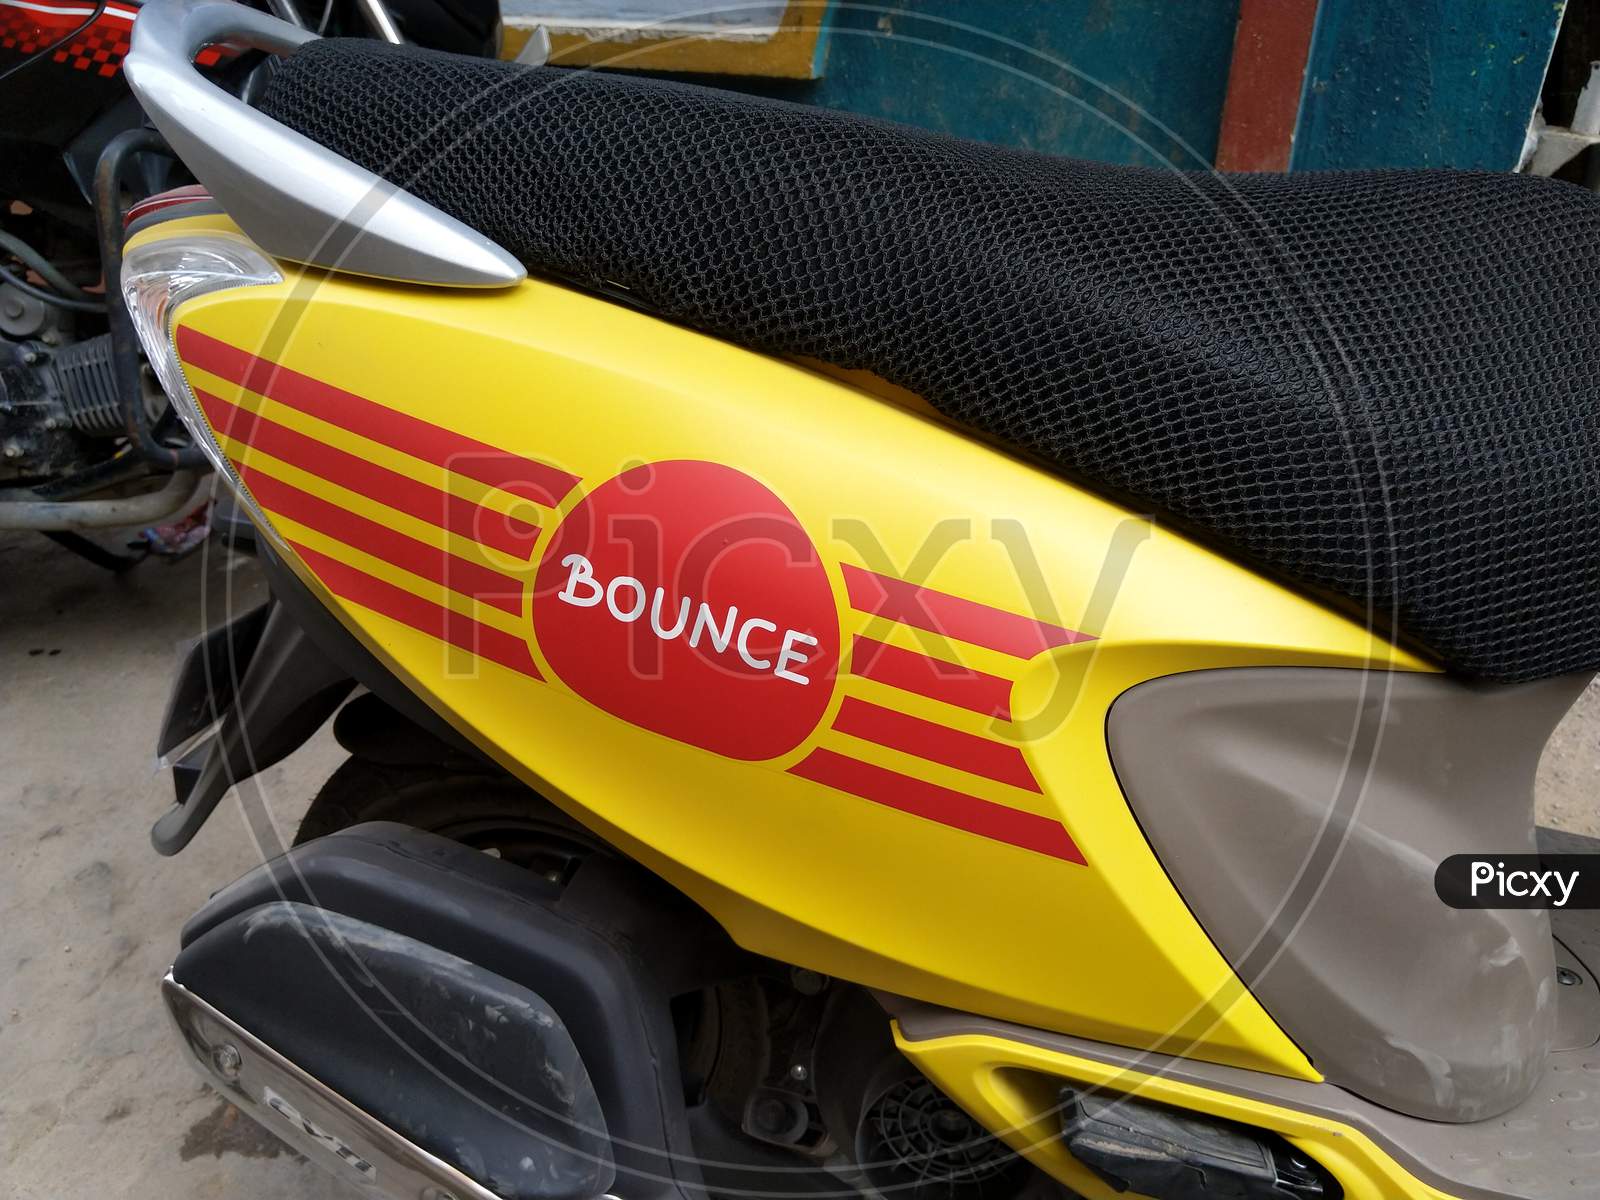 Bounce Bike Rental